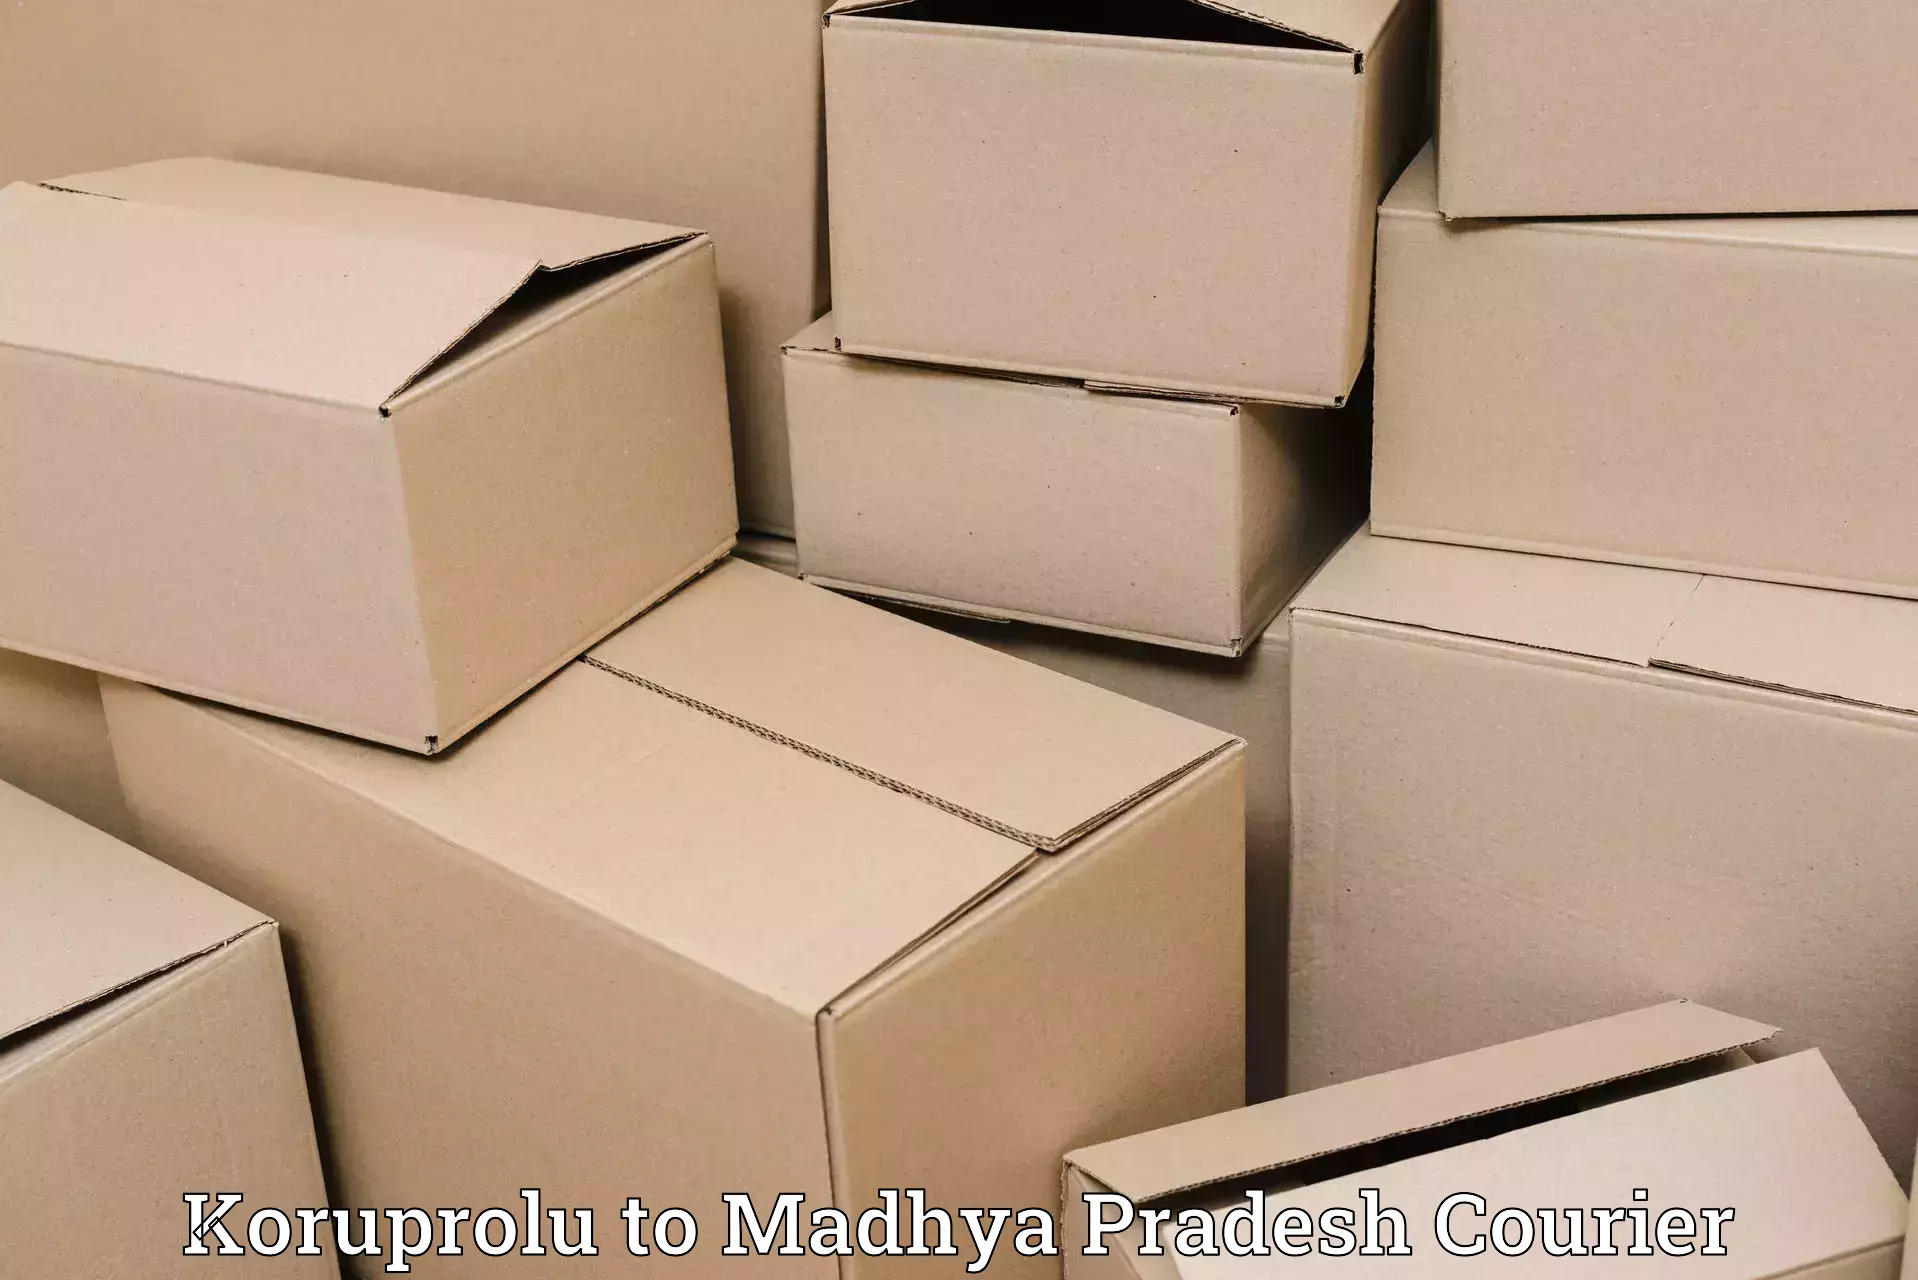 Secure shipping methods in Koruprolu to Niwari